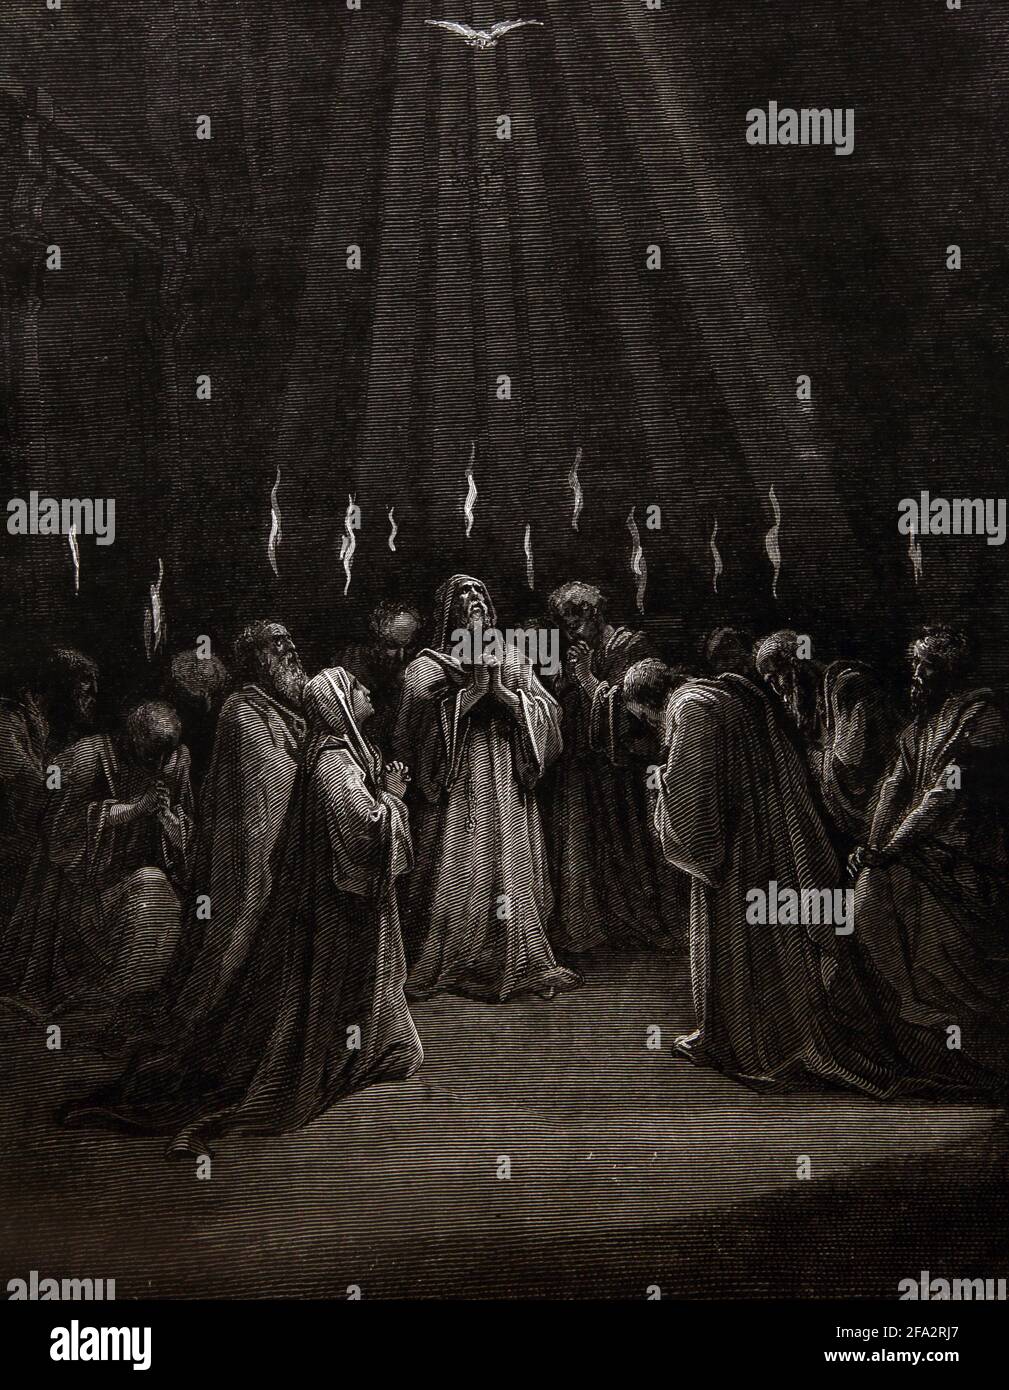 Historia Bíblica Ilustración del Descenso del Espíritu (Acts2;2-3) Por Gustave Dore Empoderando a los Apóstoles con el Espíritu Santo En el día de Pentecostés Foto de stock